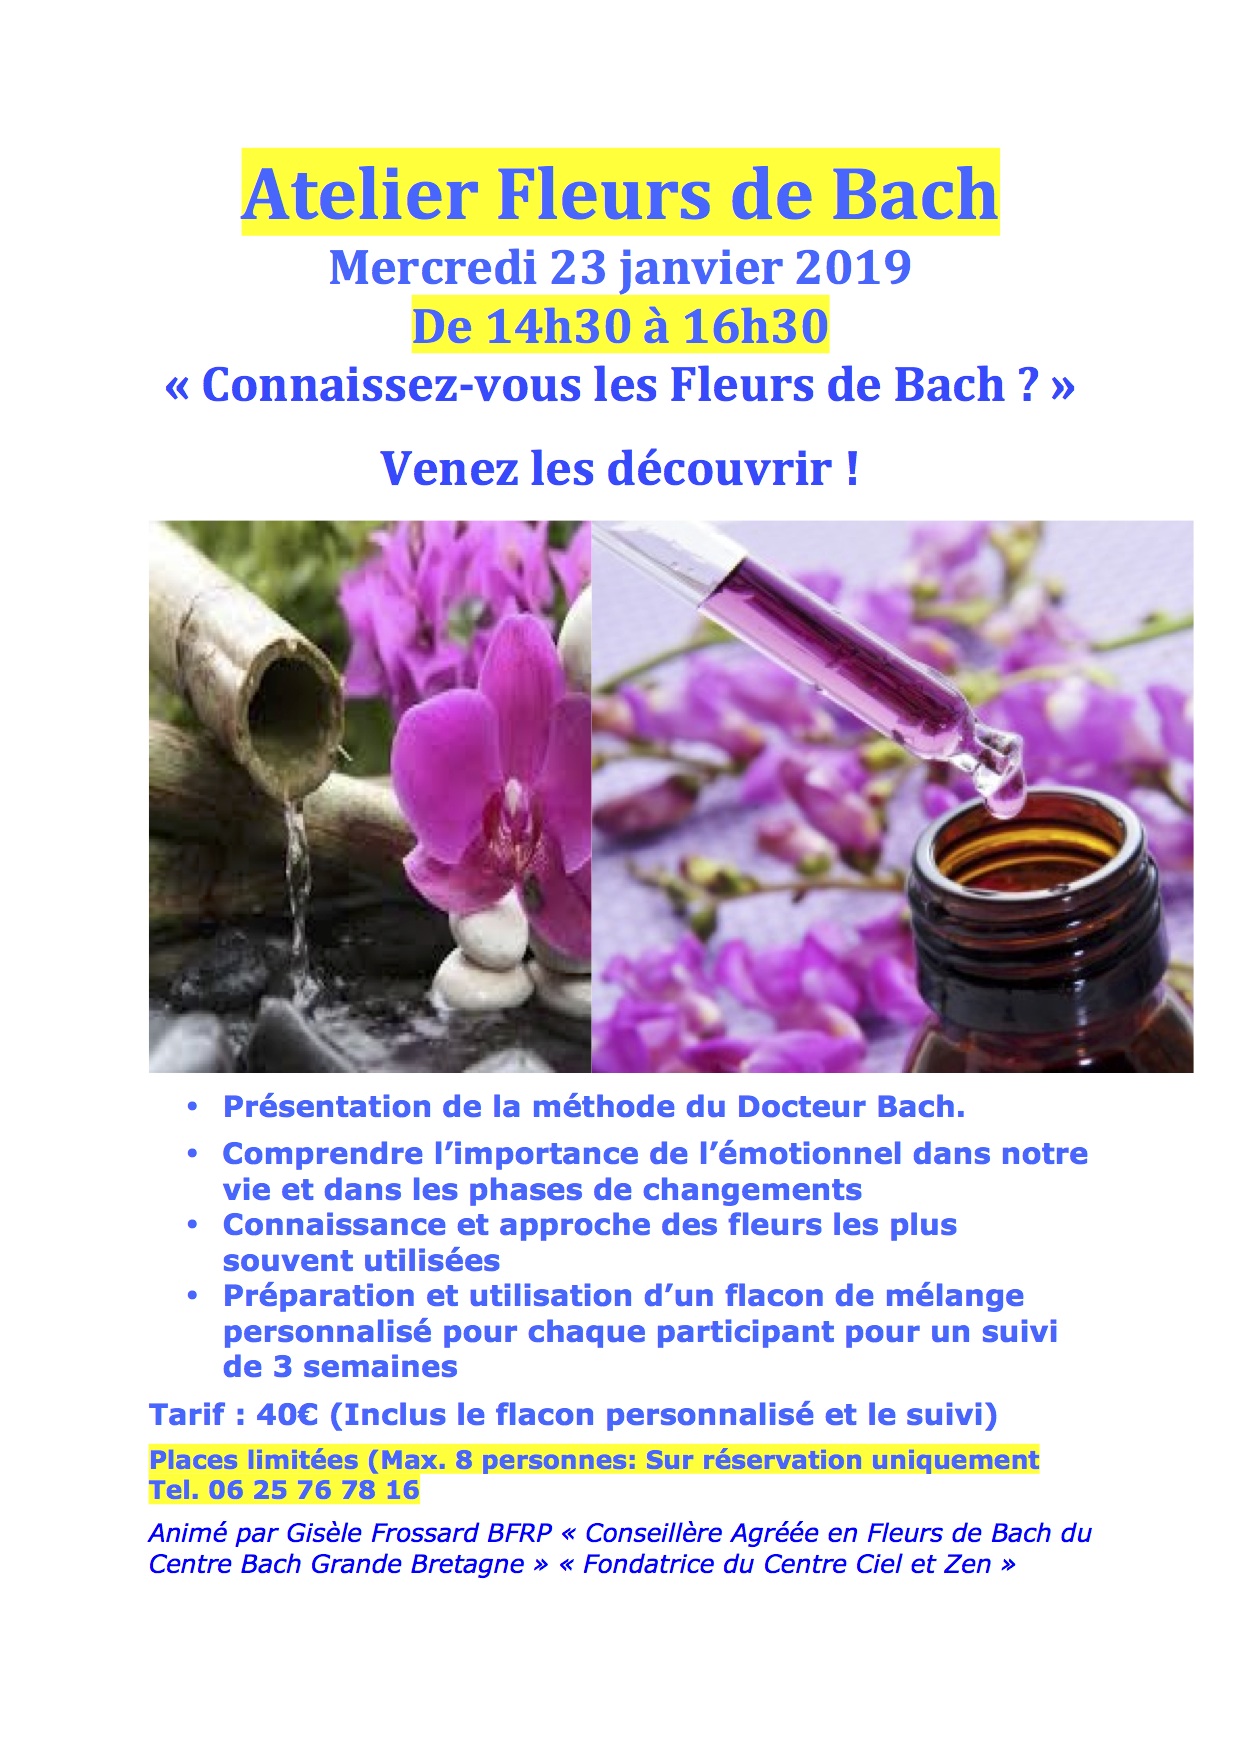 Atelier Fleurs de Bach Mercredi 23 janvier 2019